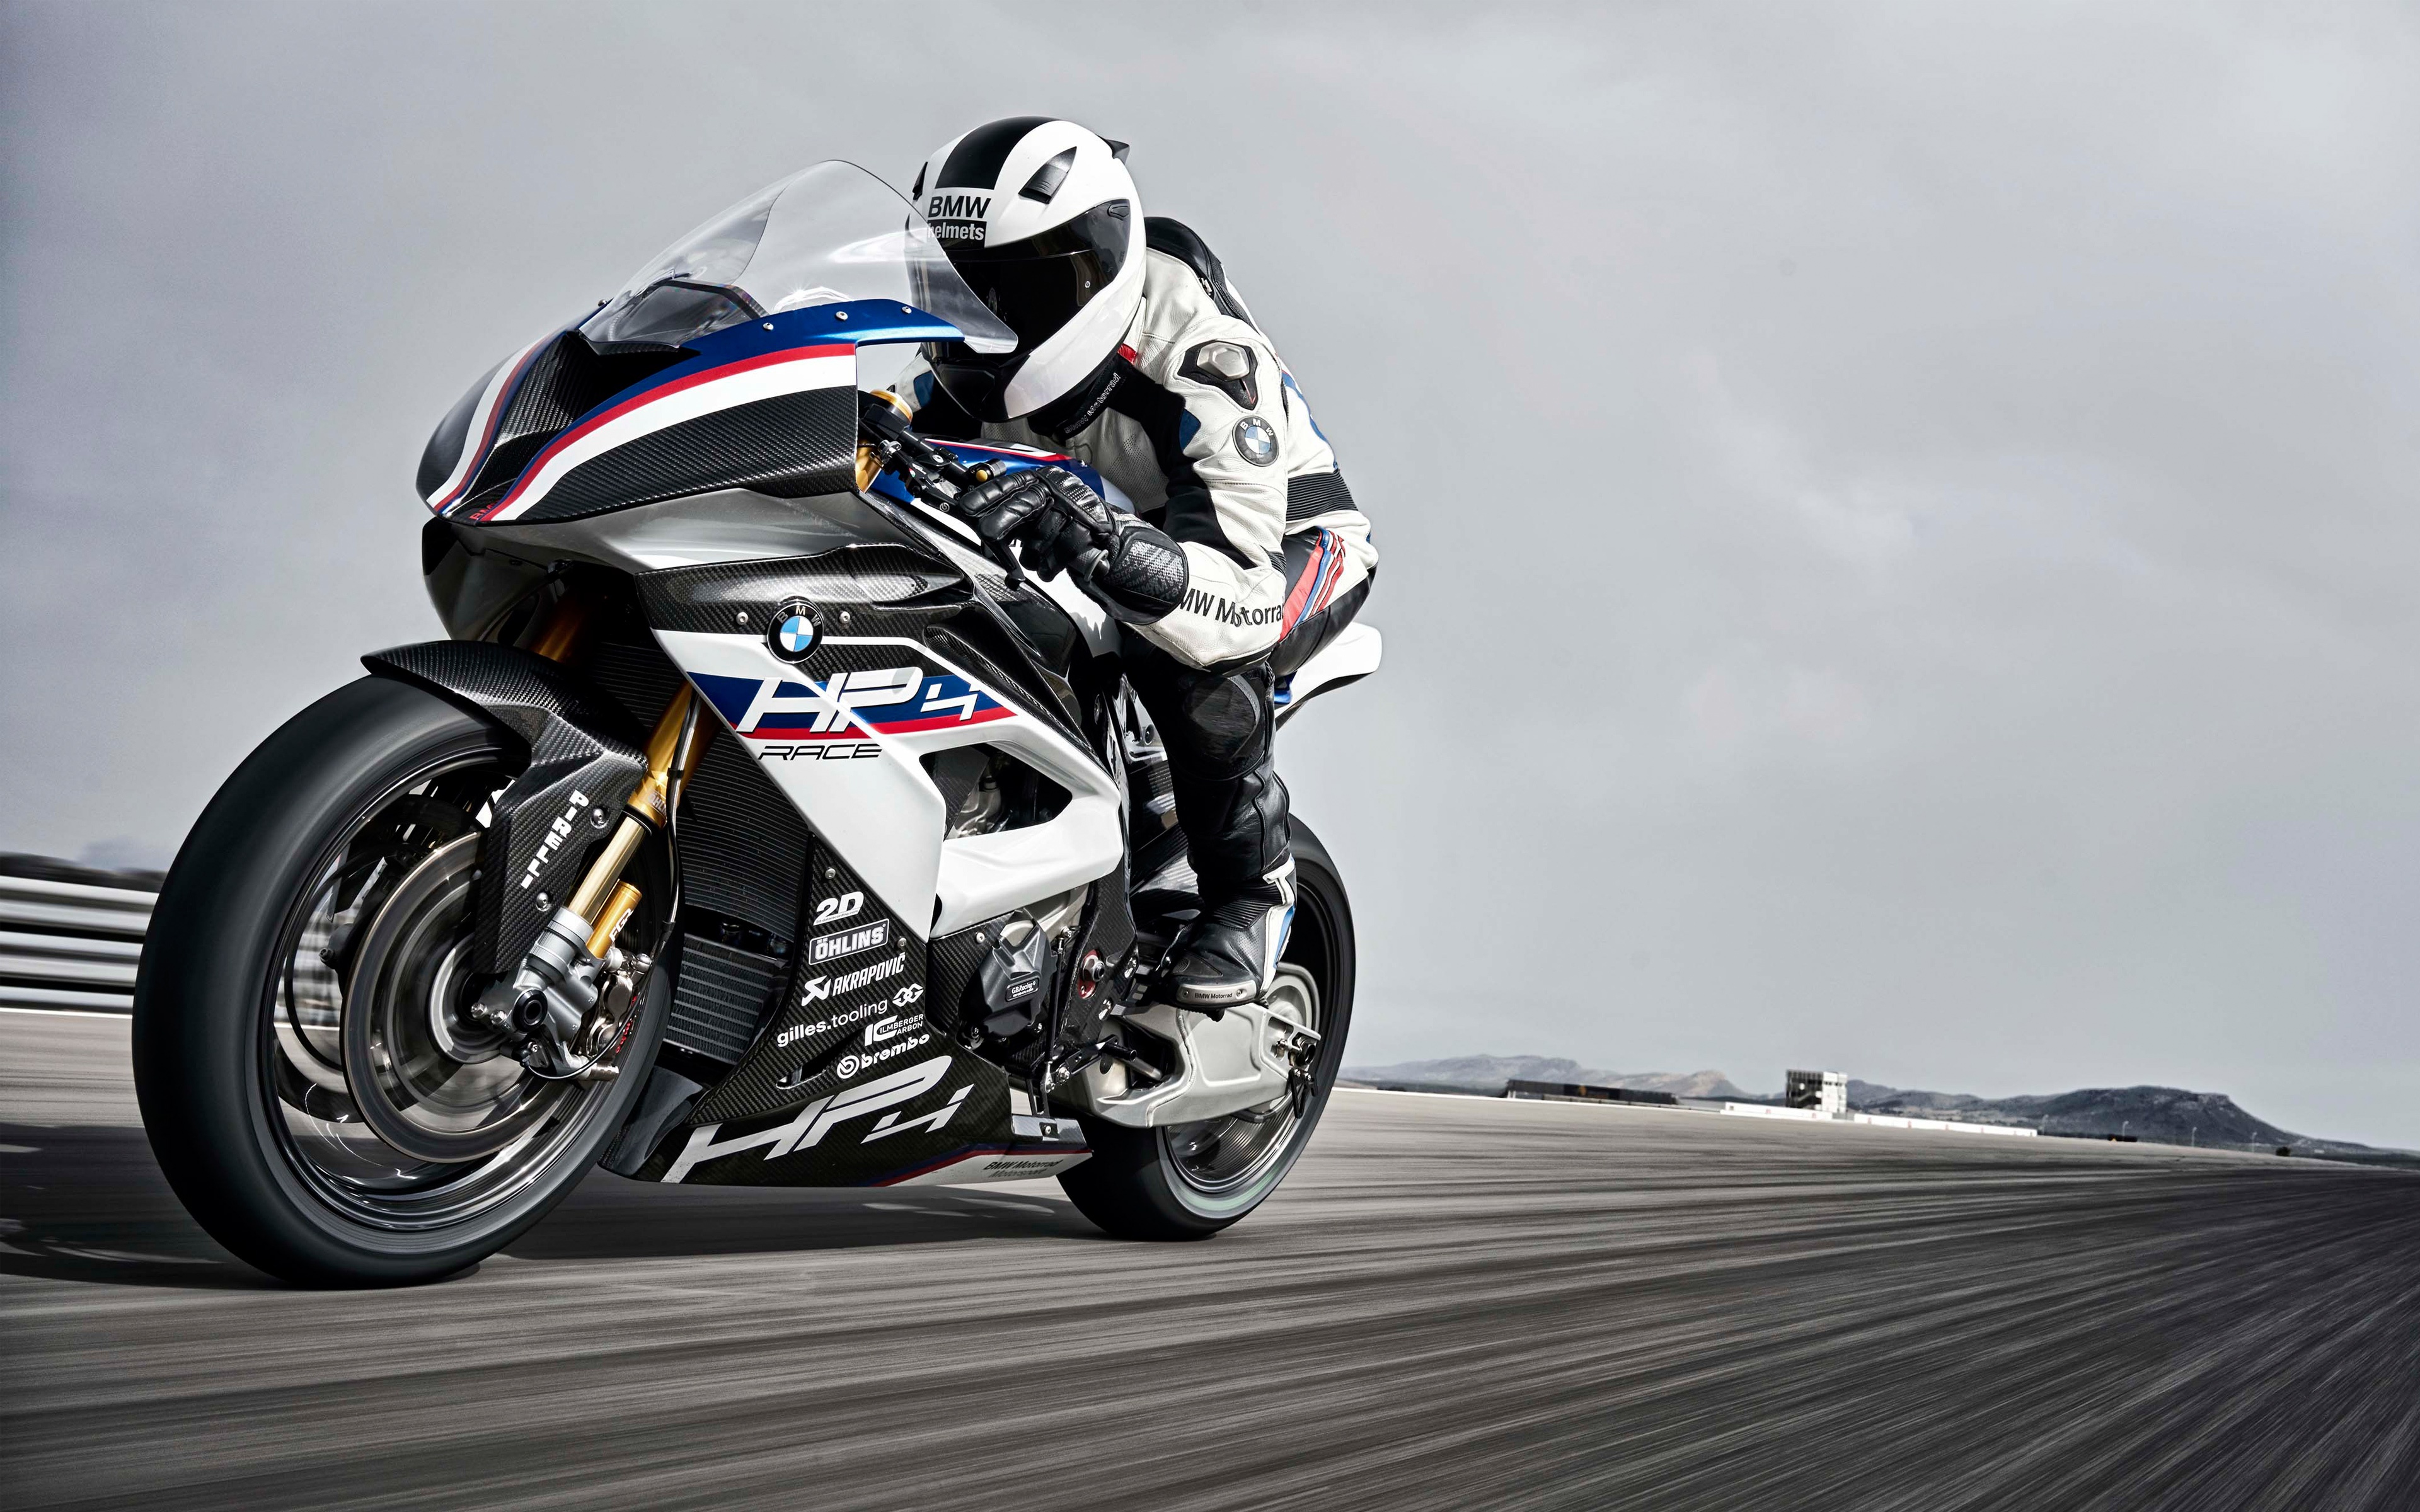 People 3840x2400 motorcycle BMW vehicle asphalt Ohlins Brembo helmet Akrapovic Pirelli racing German motorcyles